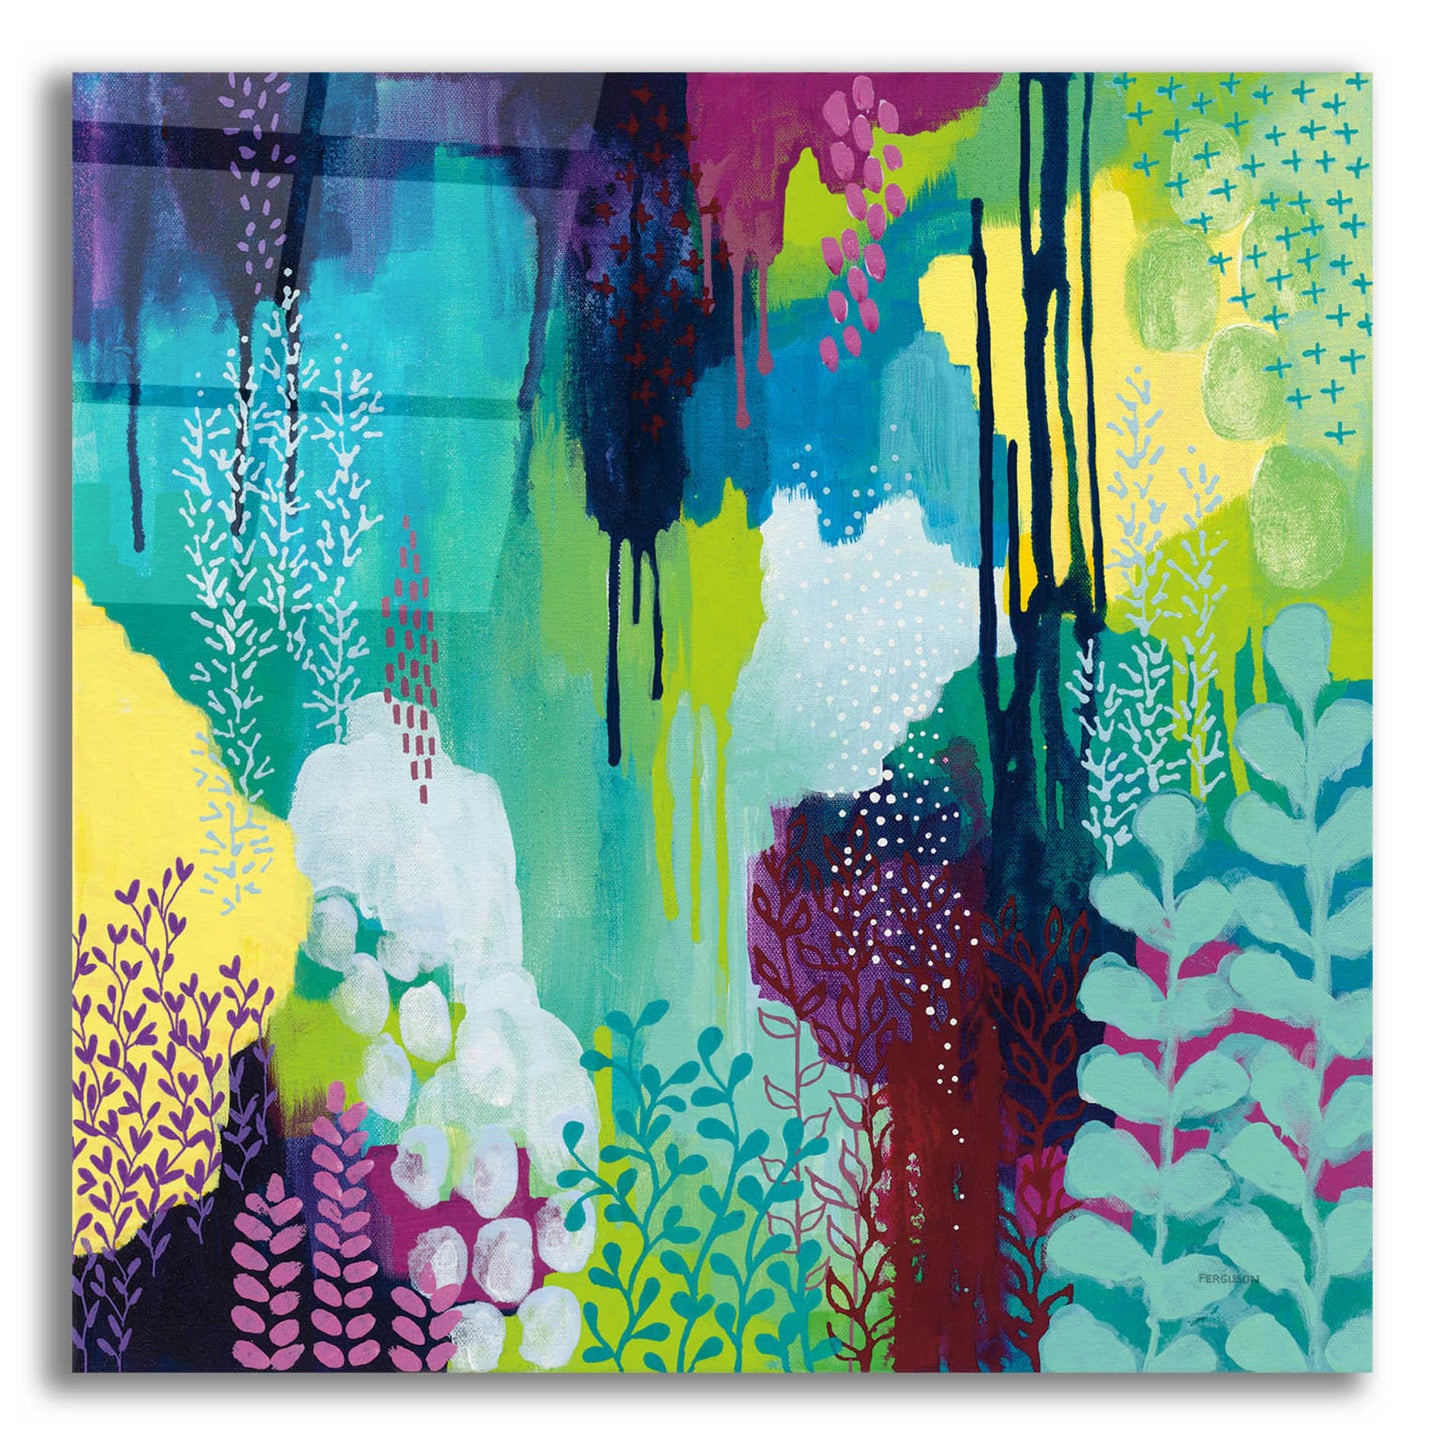 Epic Art 'Jewel Forest I' by Kathy Ferguson, Acrylic Glass Wall Art,12x12